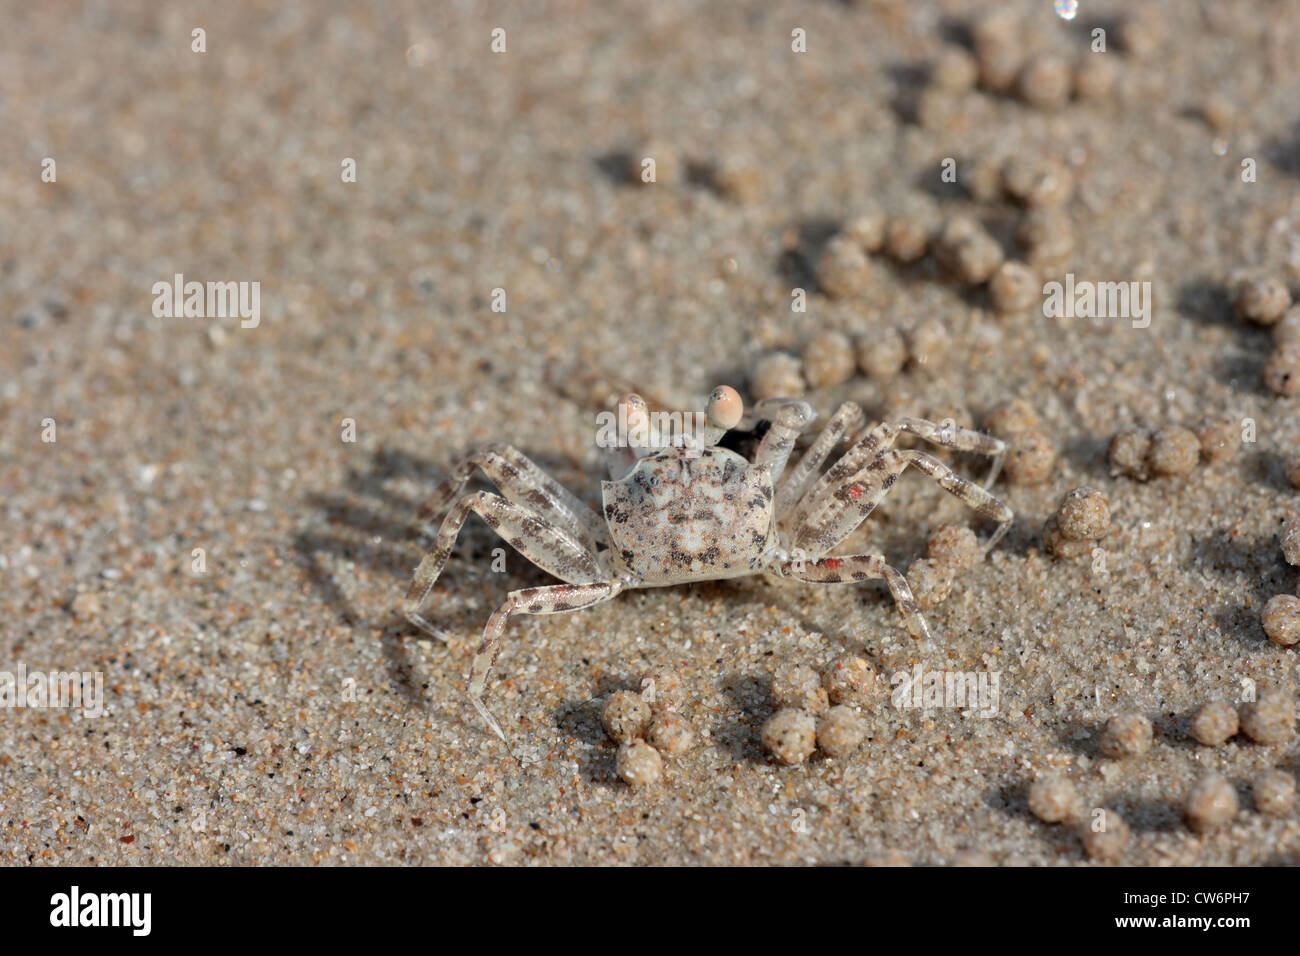 Geisterkrabben (Ocypode spec, Ocypodidae), einzelne Tier am Sandstrand unter Sand Bällchen, die hergestellt werden, beim Essen, Thailand, Phuket, Khao Lak NP Stockfoto